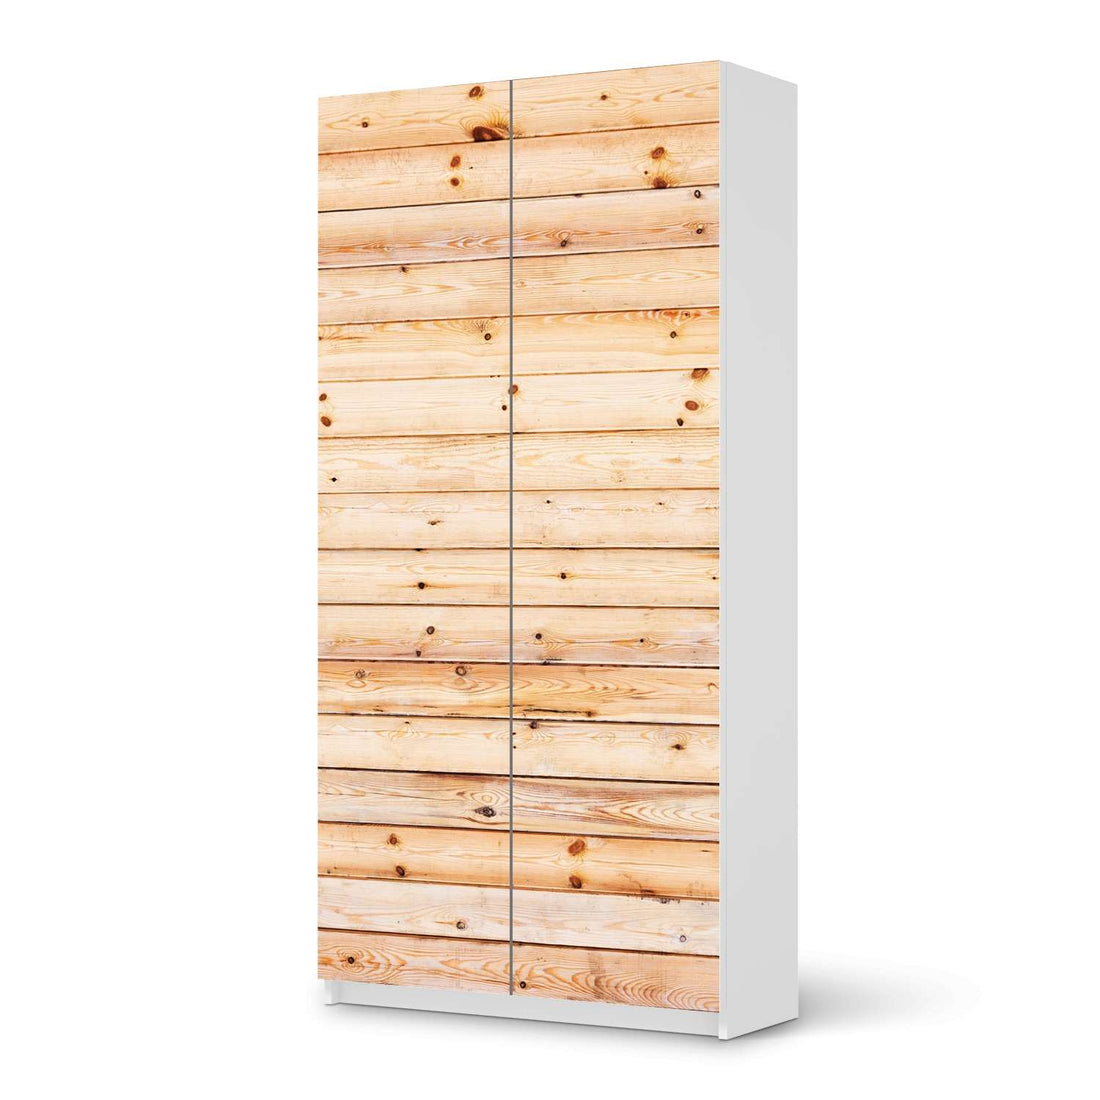 Klebefolie für Möbel Bright Planks - IKEA Pax Schrank 201 cm Höhe - 2 Türen - weiss